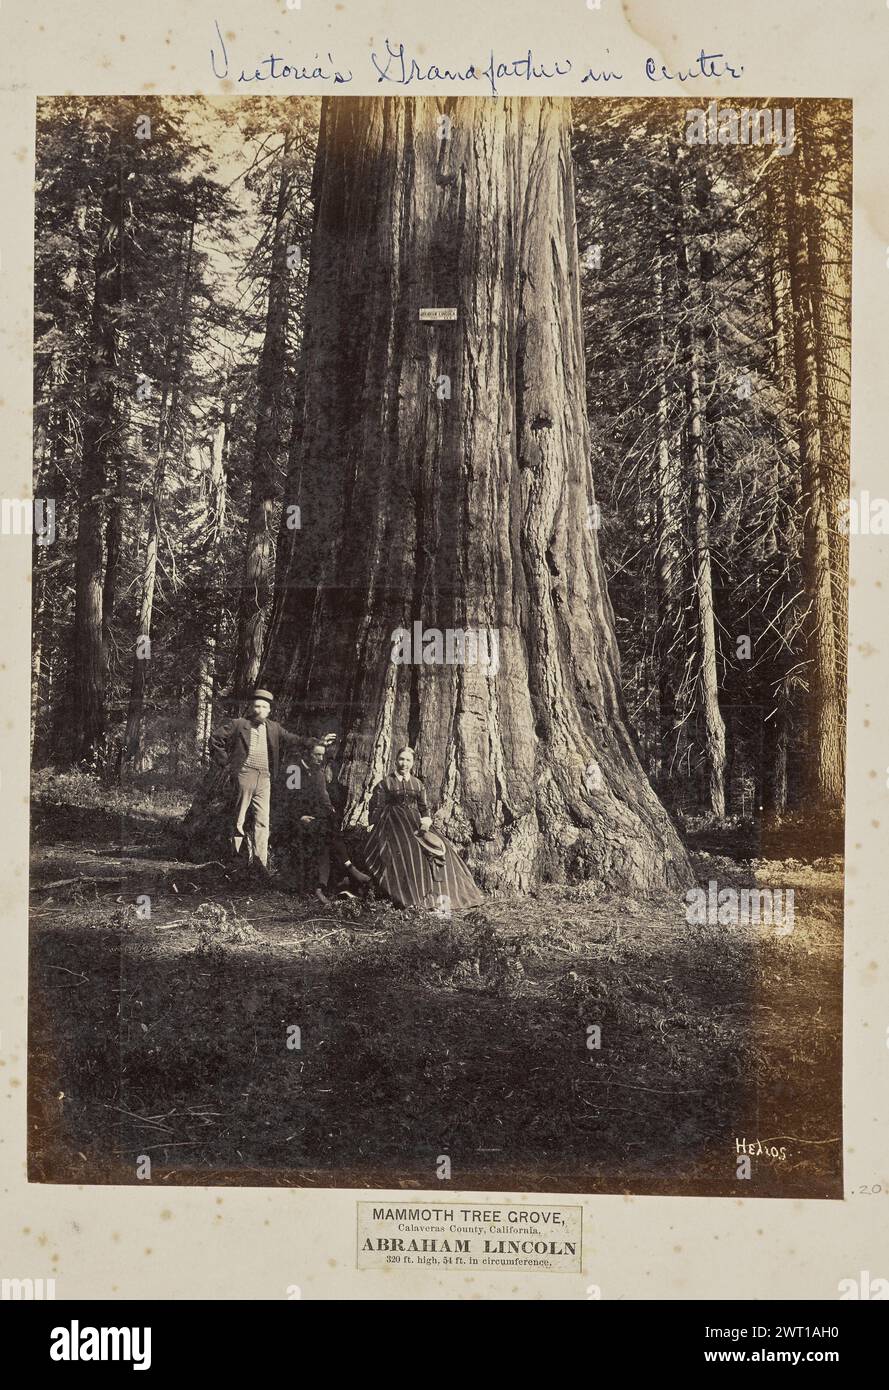 Mammoth Tree Grove, Calaveras County, California. Abraham Lincoln. 320 piedi di altezza, 54 piedi di circonferenza. Eadweard J. Muybridge, fotografo (americano, nato in Inghilterra, 1830 - 1904) negativo 1867, stampa poi il ritratto di gruppo di due uomini caucasici e di una donna caucasica alla base di un grande albero. Un cartello con le parole "Abraham Lincoln" è inchiodato al tronco dell'albero. (Recto, monta) in alto a destra, sopra l'immagine, a matita: '#4 [cerchiato]'; in alto a destra, sopra l'immagine, in inchiostro blu: 'Nonno di Vittoria al centro'; in basso a destra, sotto l'immagine, stampata sull'etichetta, in inchiostro nero: 'MAMMOTH TREE GROVE, / C. Foto Stock